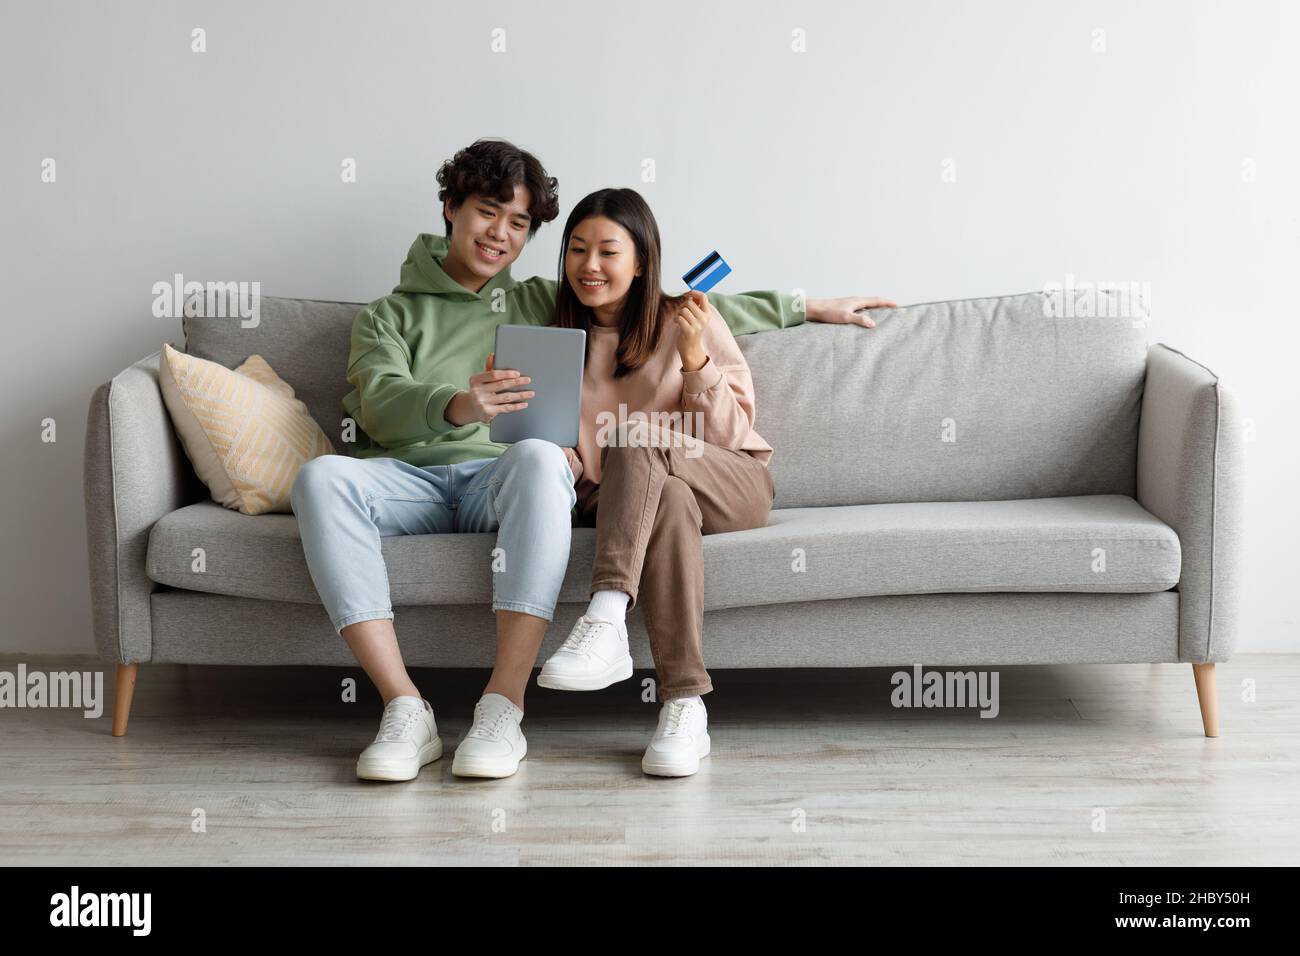 Junges asiatisches Paar mit Kreditkarte und Tablet auf dem Sofa sitzend, Waren im Internet bestellend, Sachen im Webshop kaufend Stockfoto